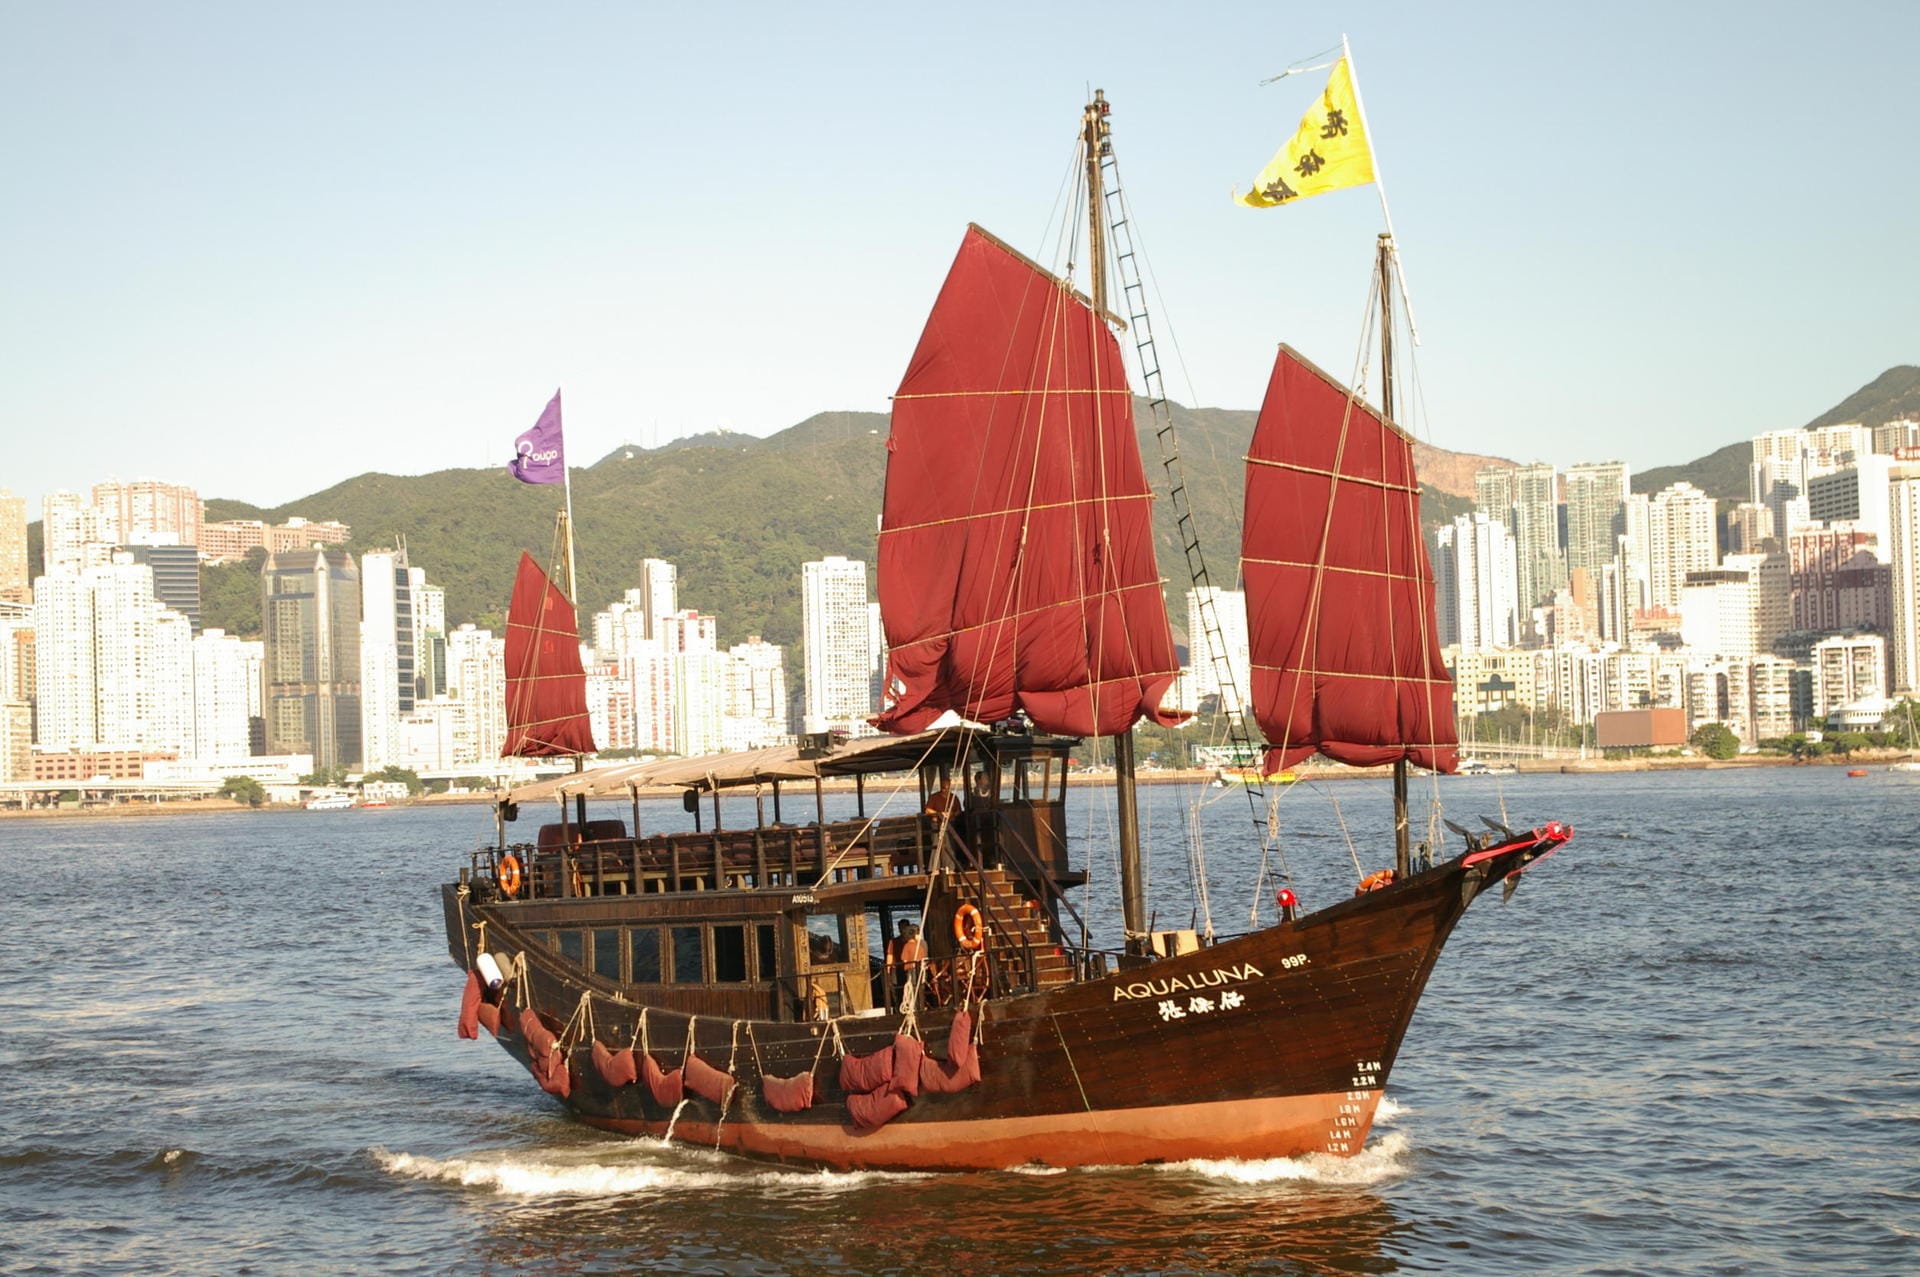 Der Begriff "Dschunke" bezeichnet chinesische hölzerne Segelboote, typisch sind die roten Segel.